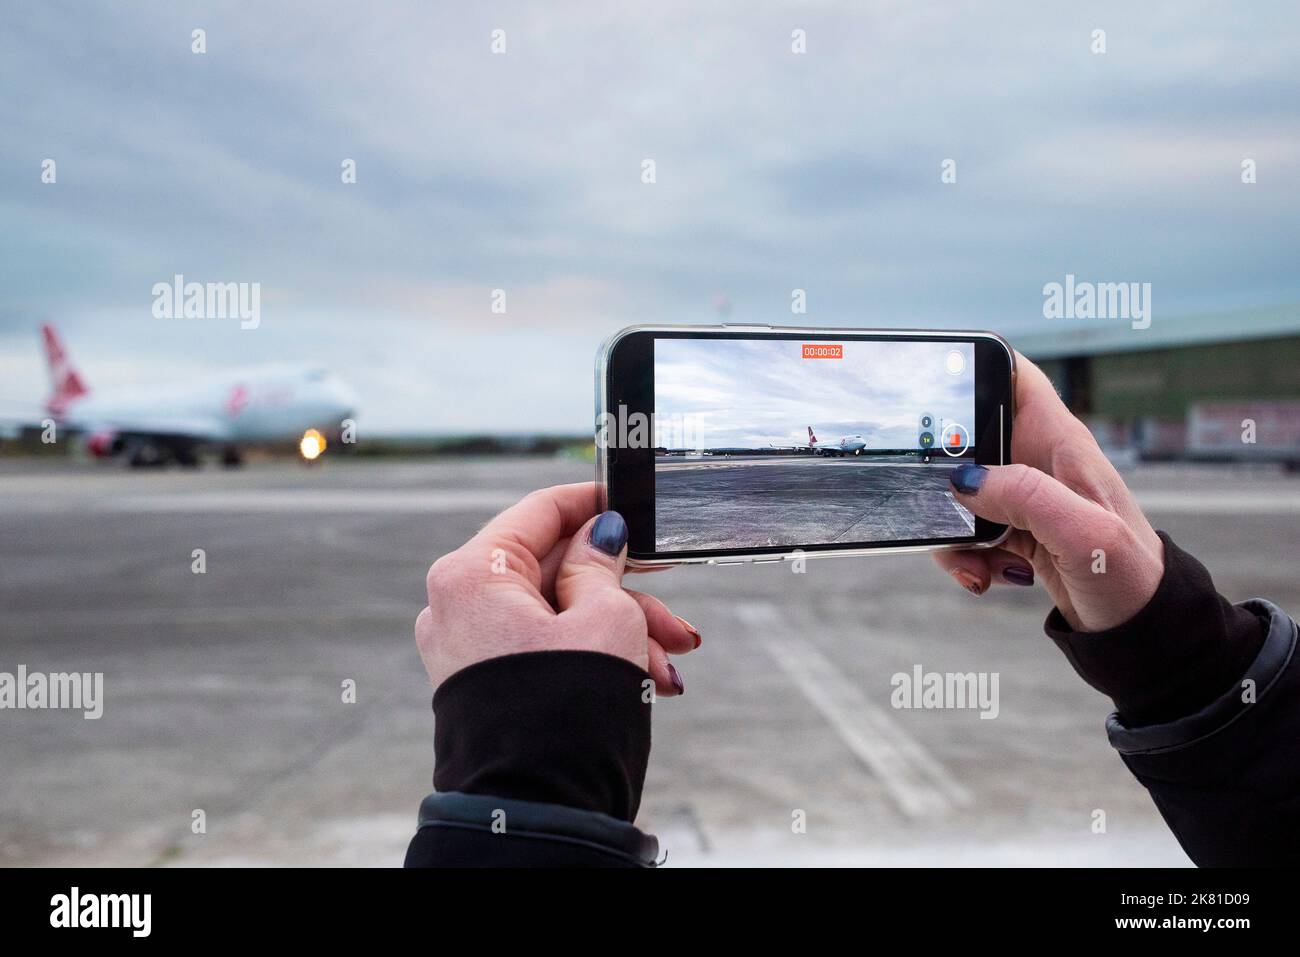 Auf dem Bildschirm eines Zuschauers Smartphone die Jungfrau Orbit gesehen, Cosmic Girl, ein 747-400 umgewandelt zu einer Raketenstartplattform Taxis zu einem Halt auf dem ru Stockfoto